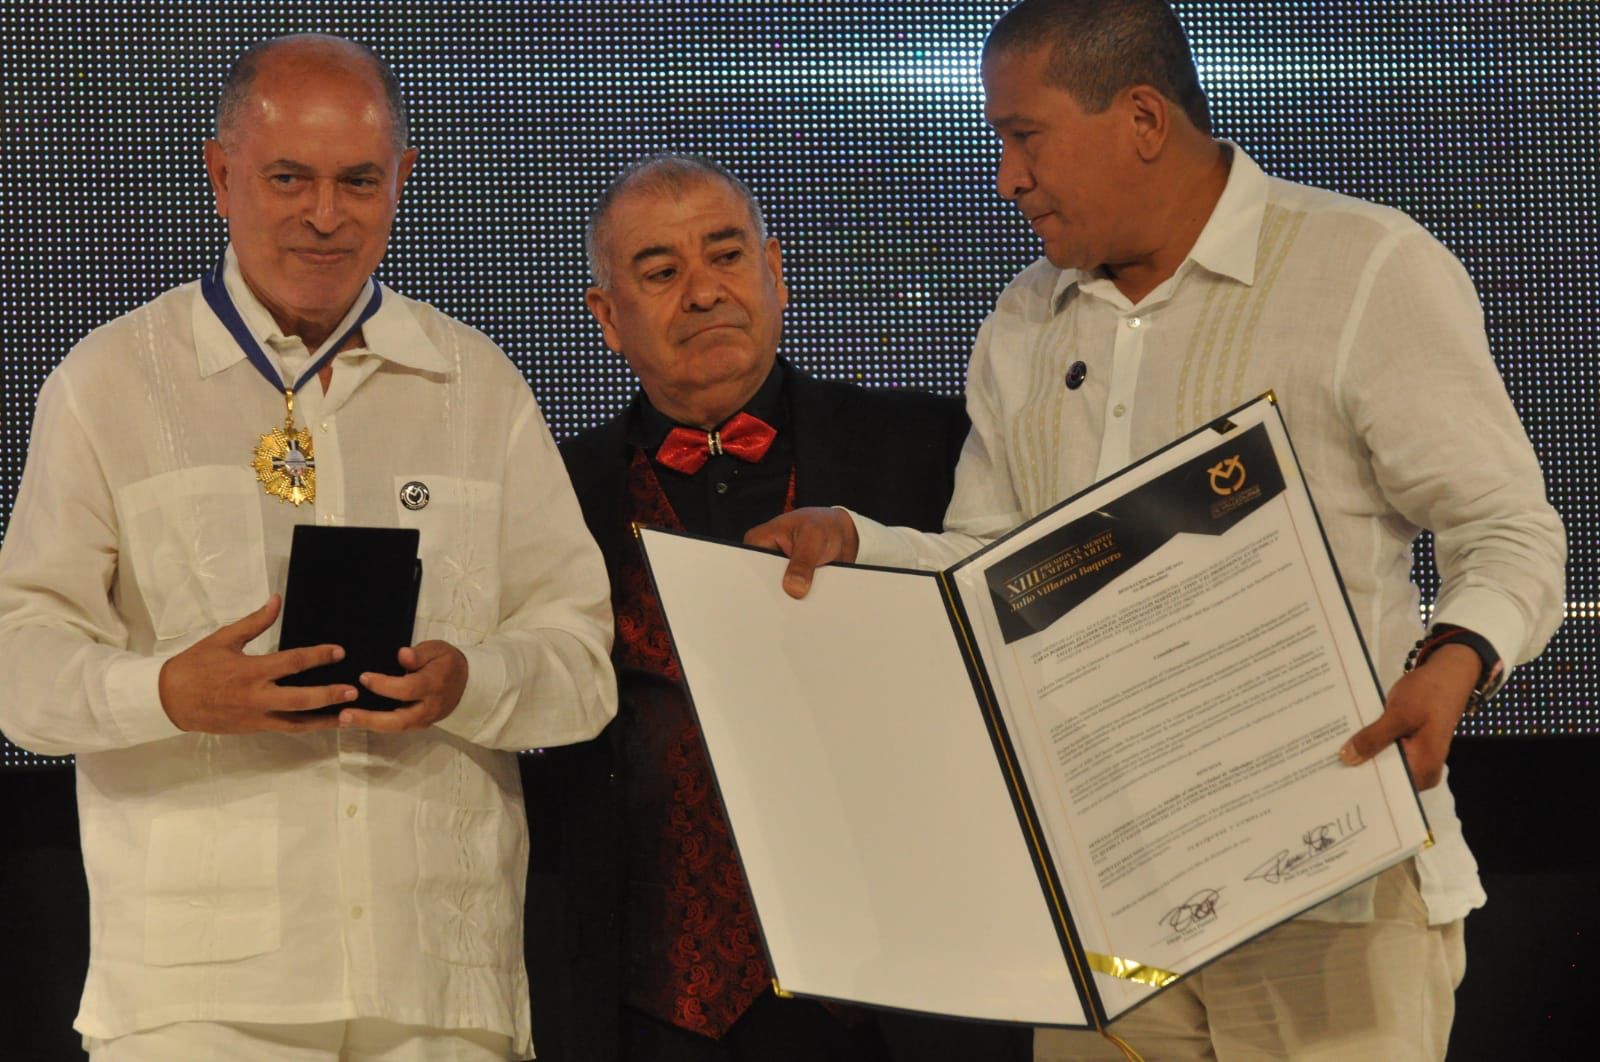 Cámara de Comercio de Valledupar entregó Medalla al Mérito a gestores ambientales por protección al río Guatapurí